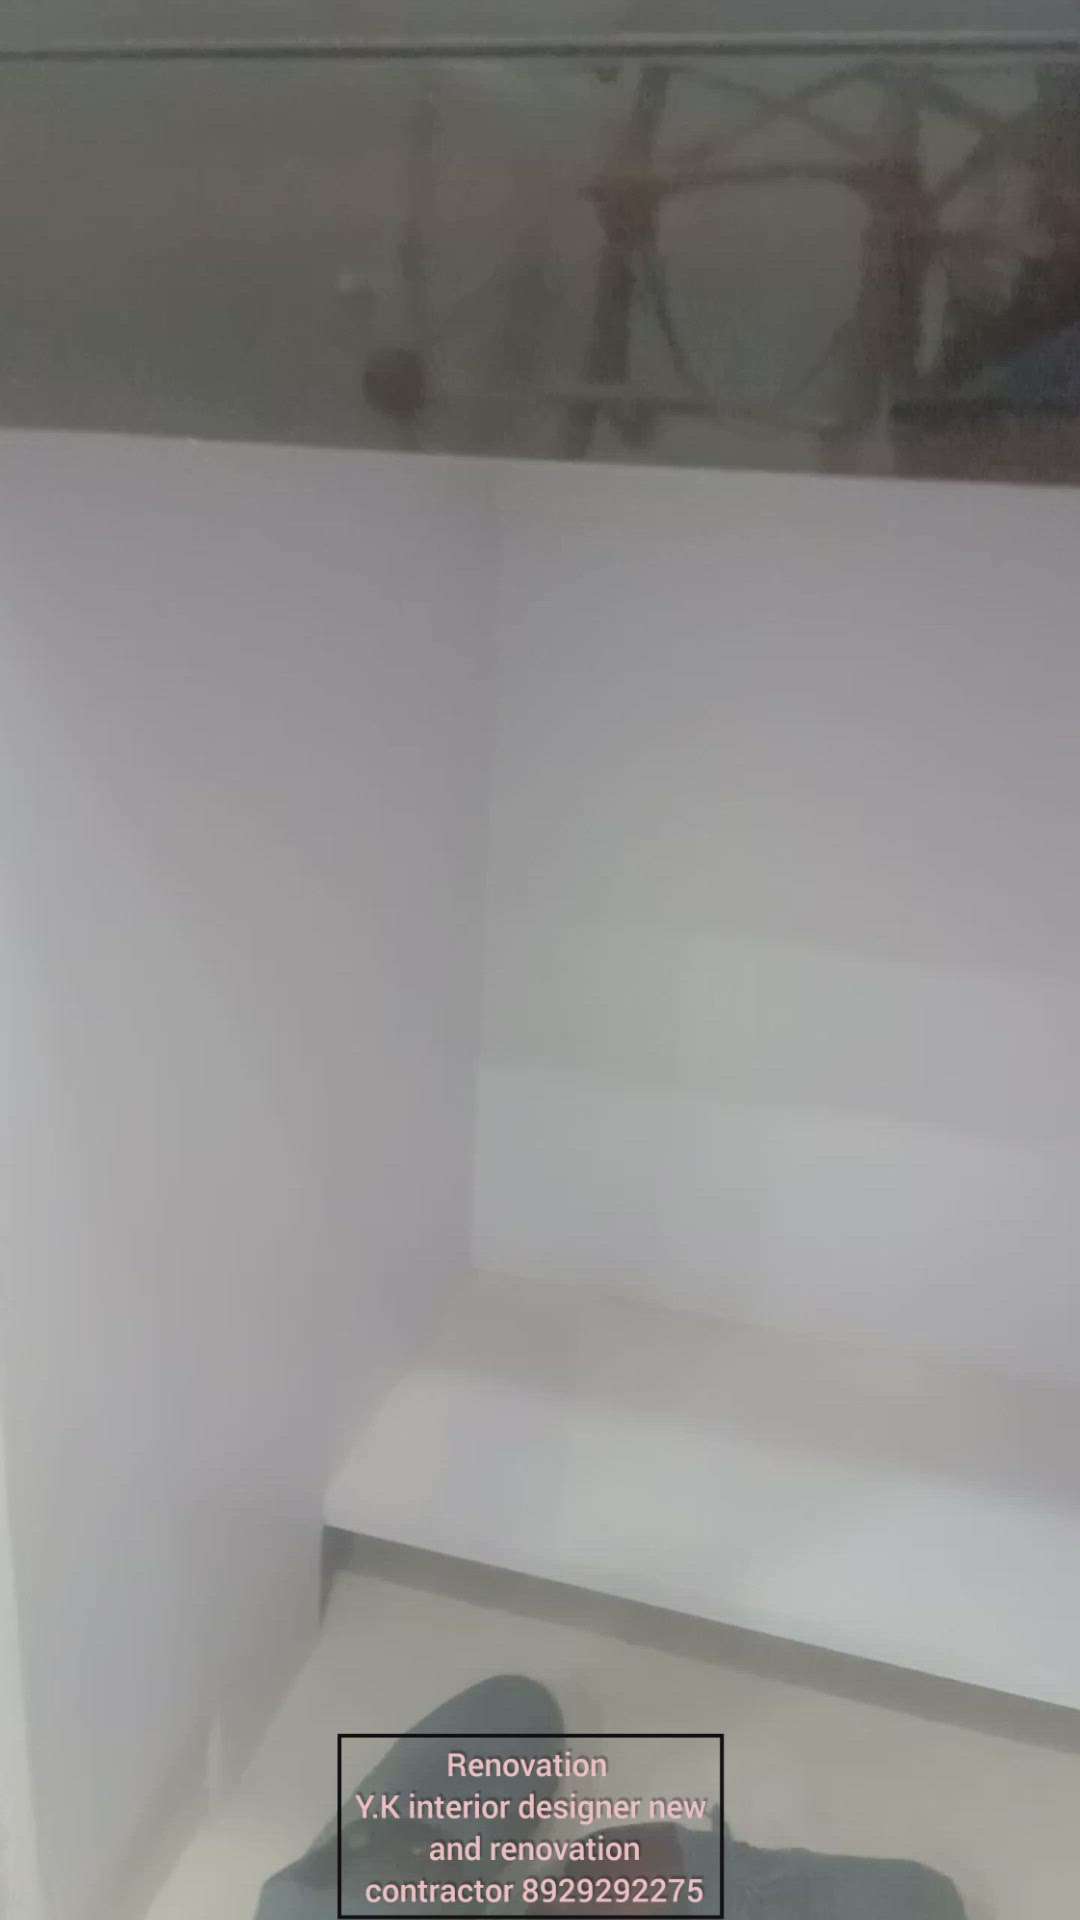 2bhk Renovation work 
Y.K interior designer new and renovation contractor  #HouseRenovation  #KitchenRenovation  #BathroomRenovation  #2bhkrenovation  #ykbestintetior  #ykintetiorroom  #ykyammi  #ykwallputty  #ClosedKitchen  #MasterBedroom  #JKGypsum  #ClosedKitchen